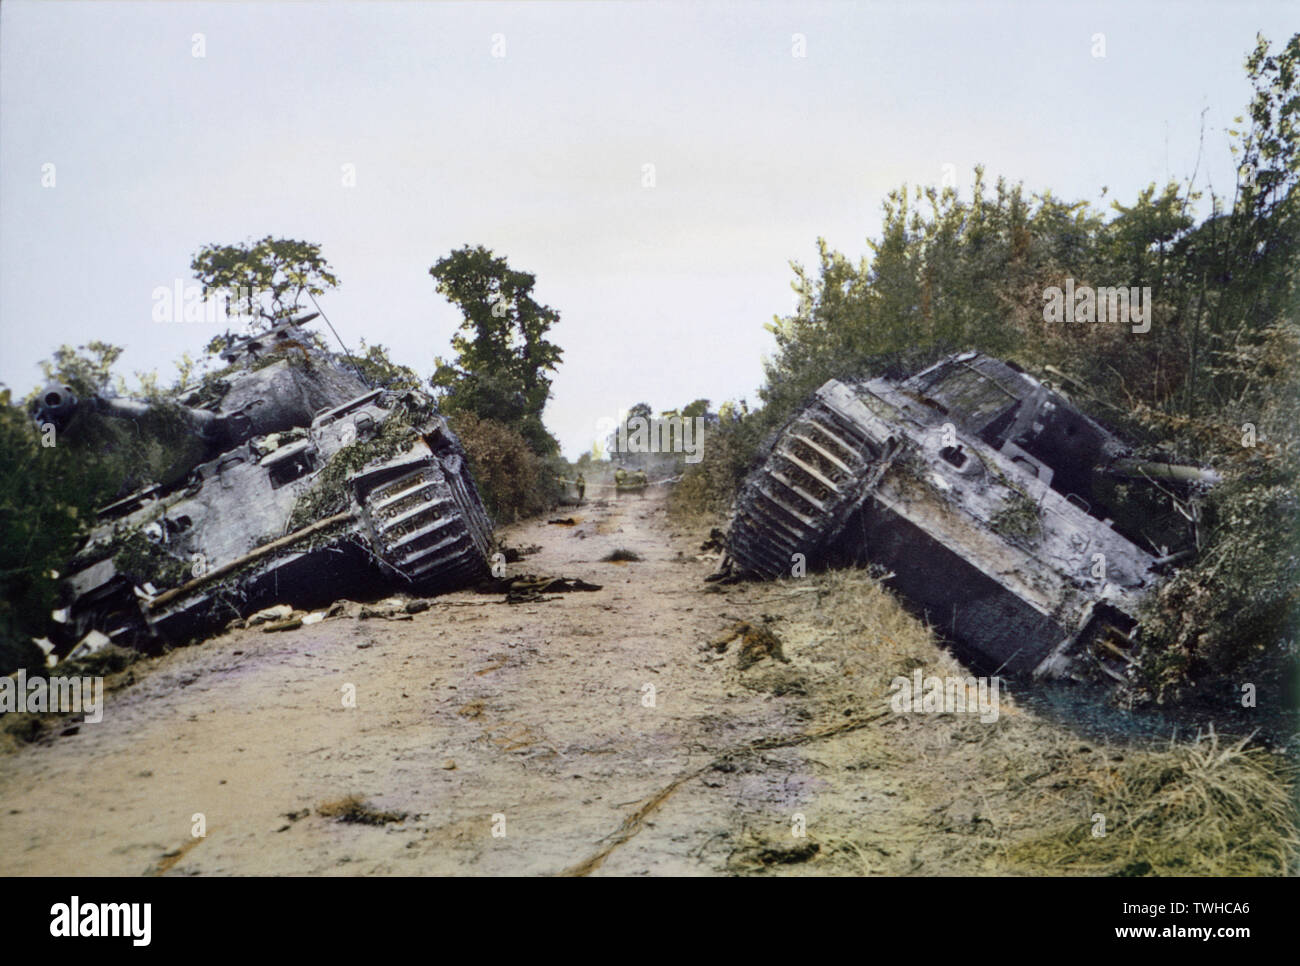 Deux chars Panther allemand endommagé, bataille de Normandie, France, juin 1944 Banque D'Images